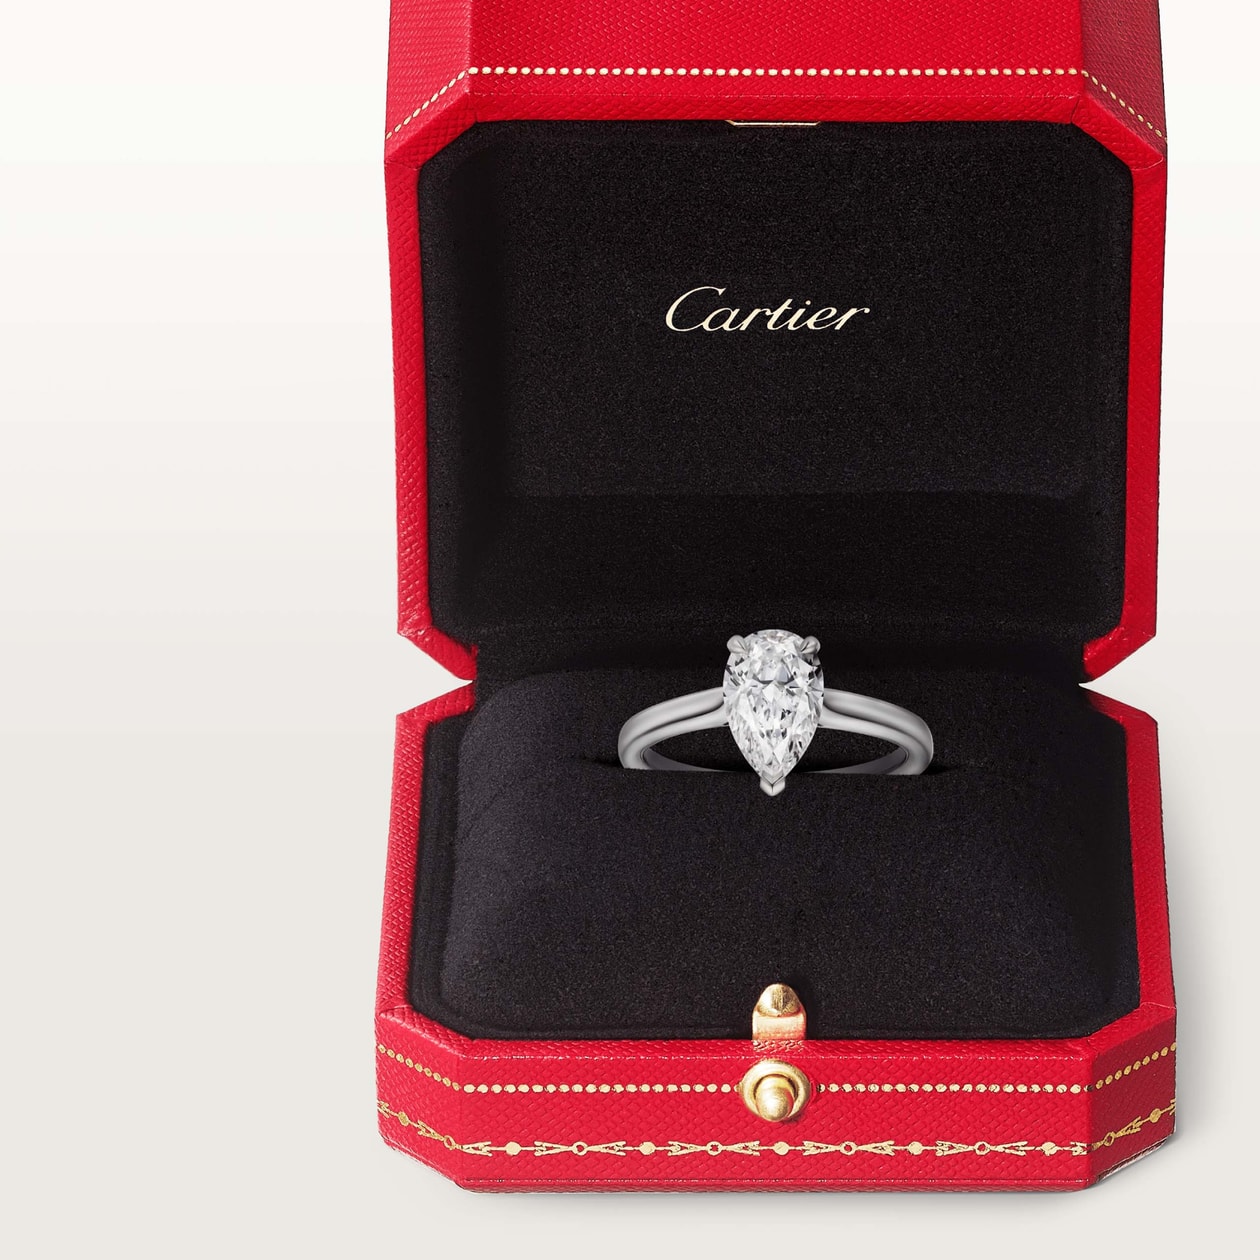 為自己挑一份情人節禮物！嚴選 Cartier 務必入手人氣單品